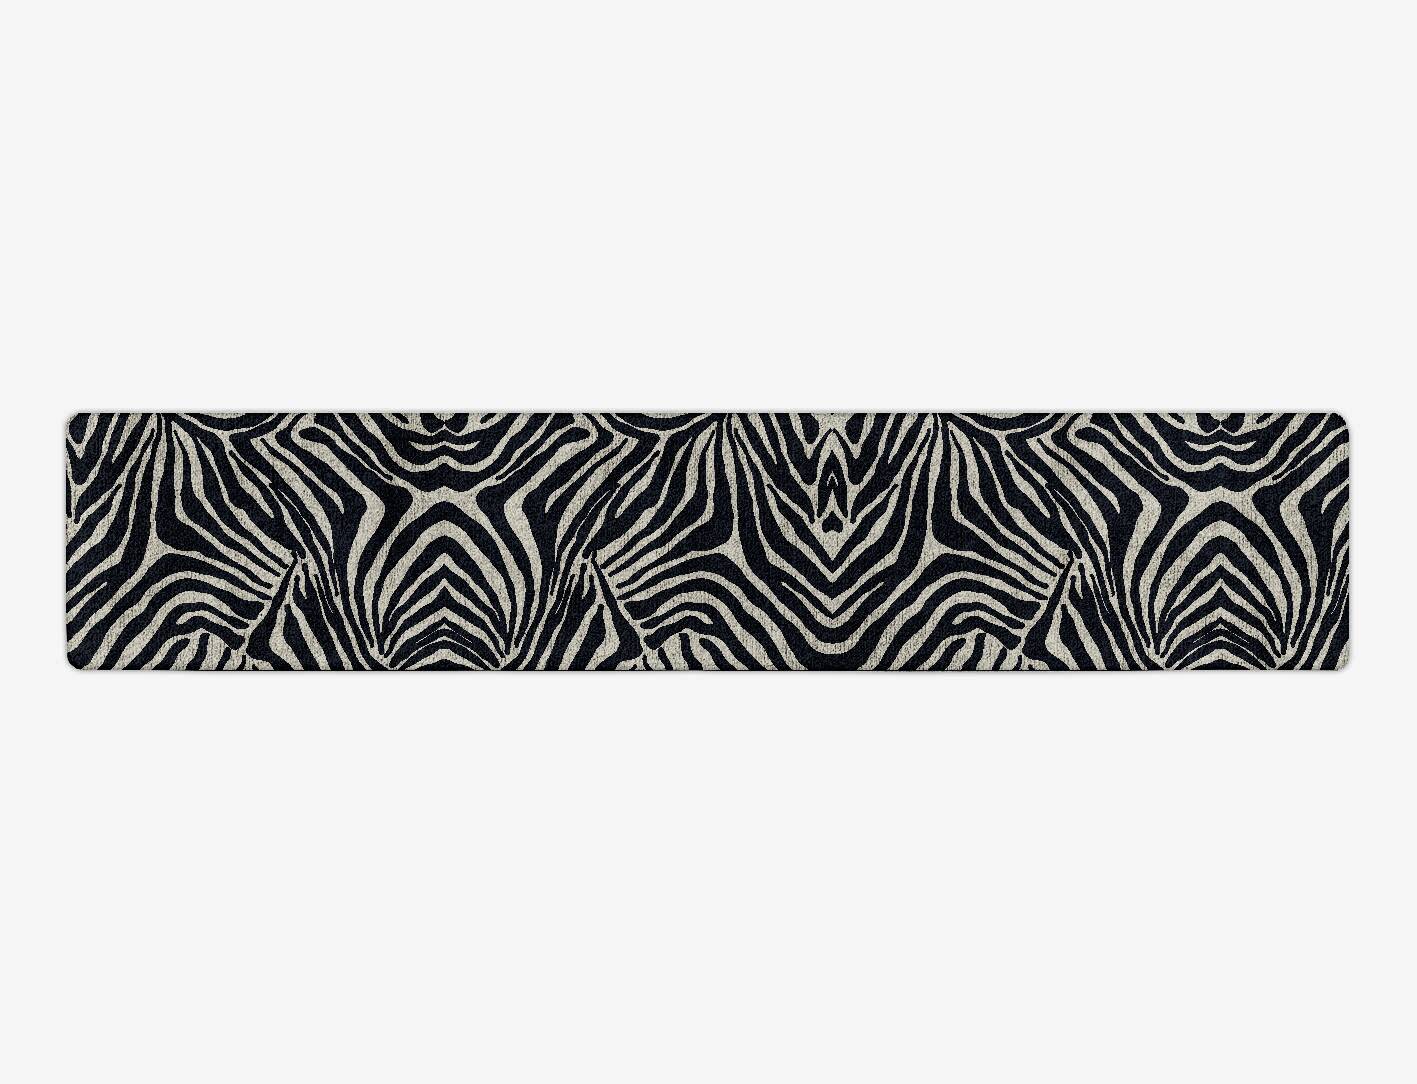 Zebra Stripes Animal Prints Runner Hand Tufted Bamboo Silk Custom Rug by Rug Artisan